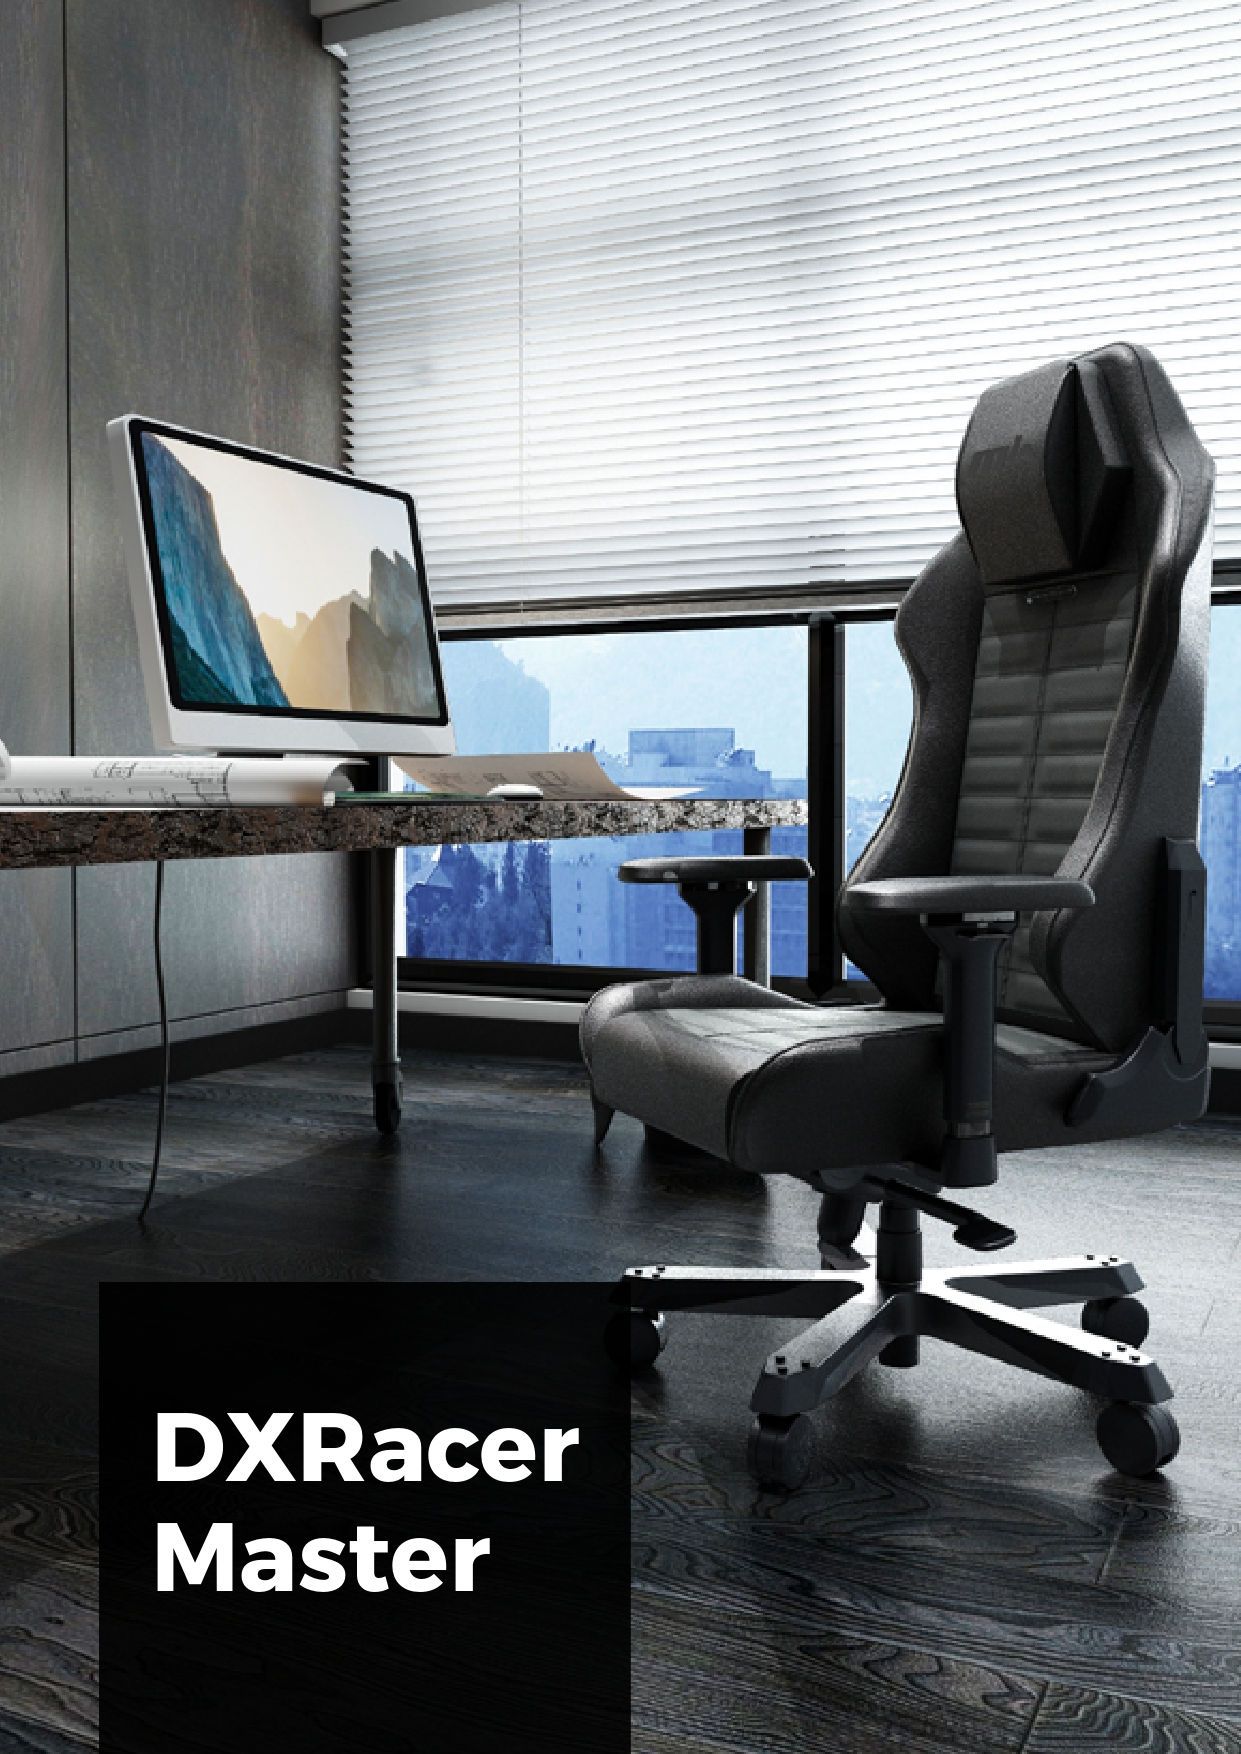 Кресло для геймеров DXRACER MASTER Max DMC-I233S-E-A2 зеленое: купить в мебельном магазине МебельОК